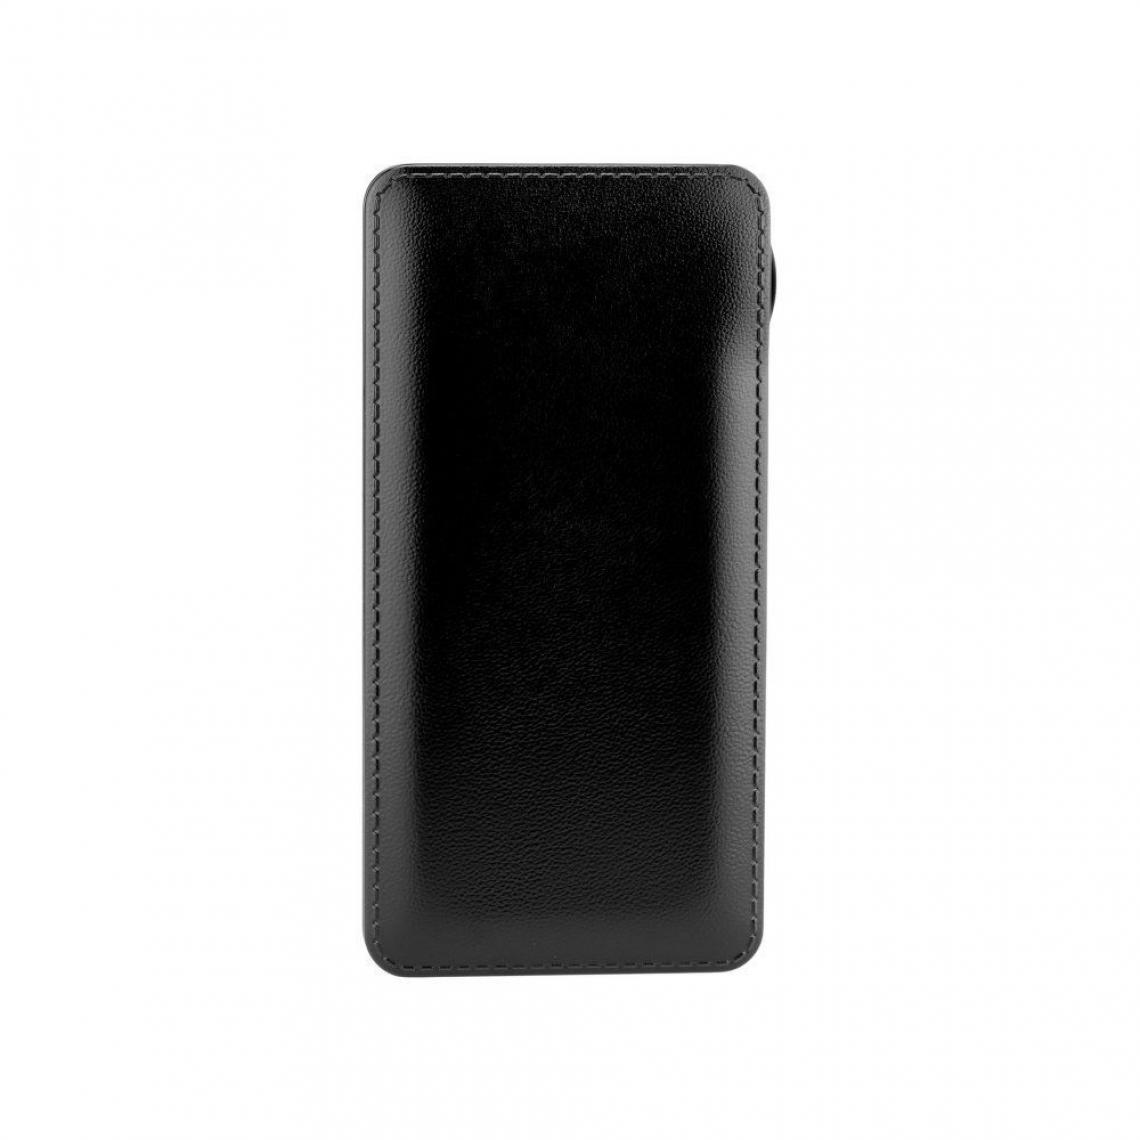 Ozzzo - Chargeur batterie externe 20000 mAh powerbank ozzzo noir pour APPLE iPhone 4 4S - Autres accessoires smartphone